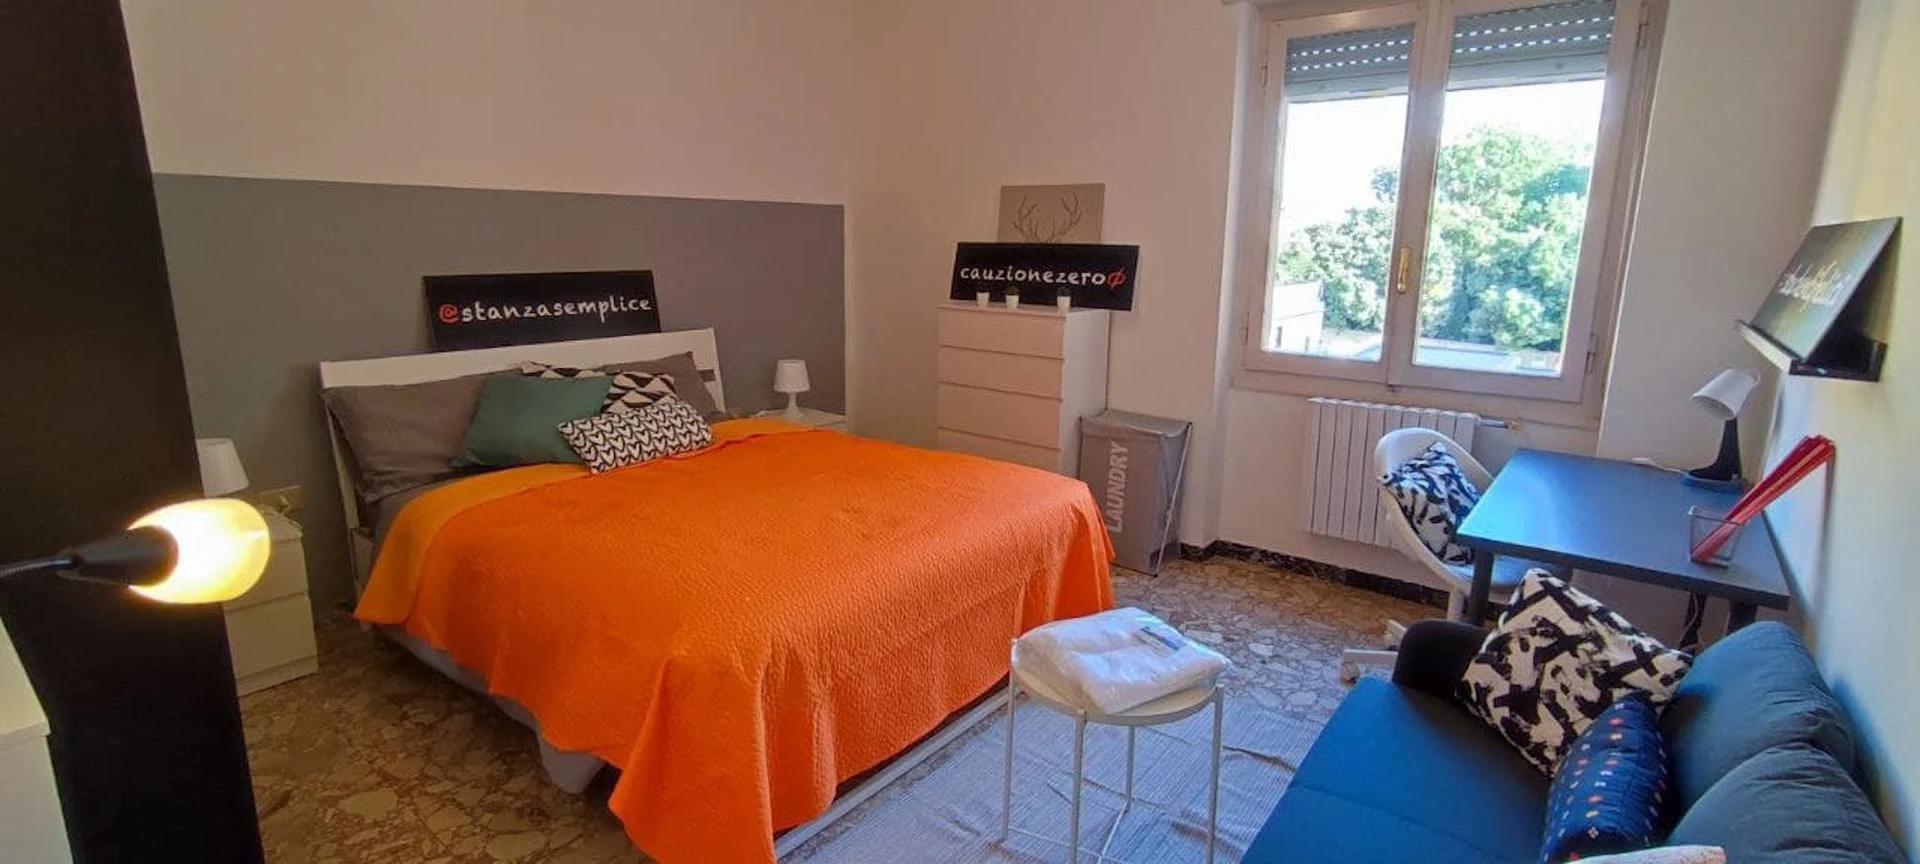 Quarto para alugar com cama de casal em Sassari